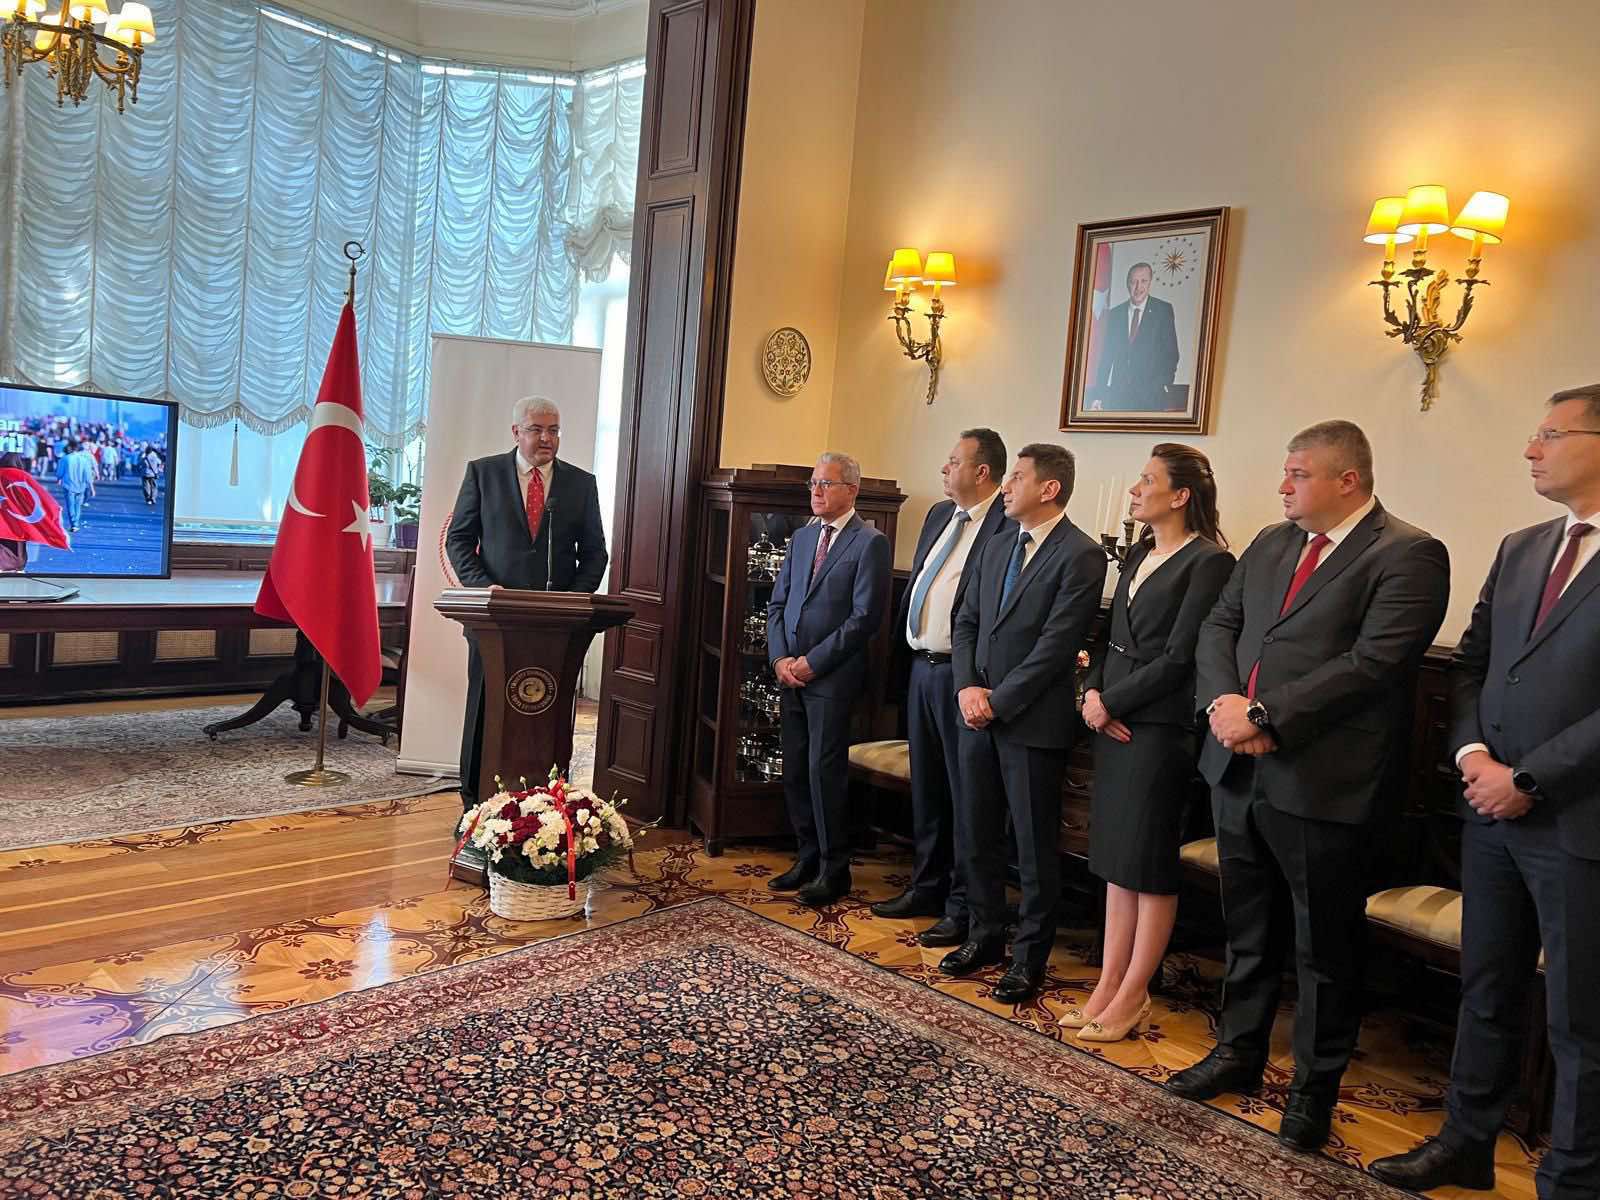 Ръководството на ДПС присъства на възпоменателна церемония за Деня на демокрацията в Турция